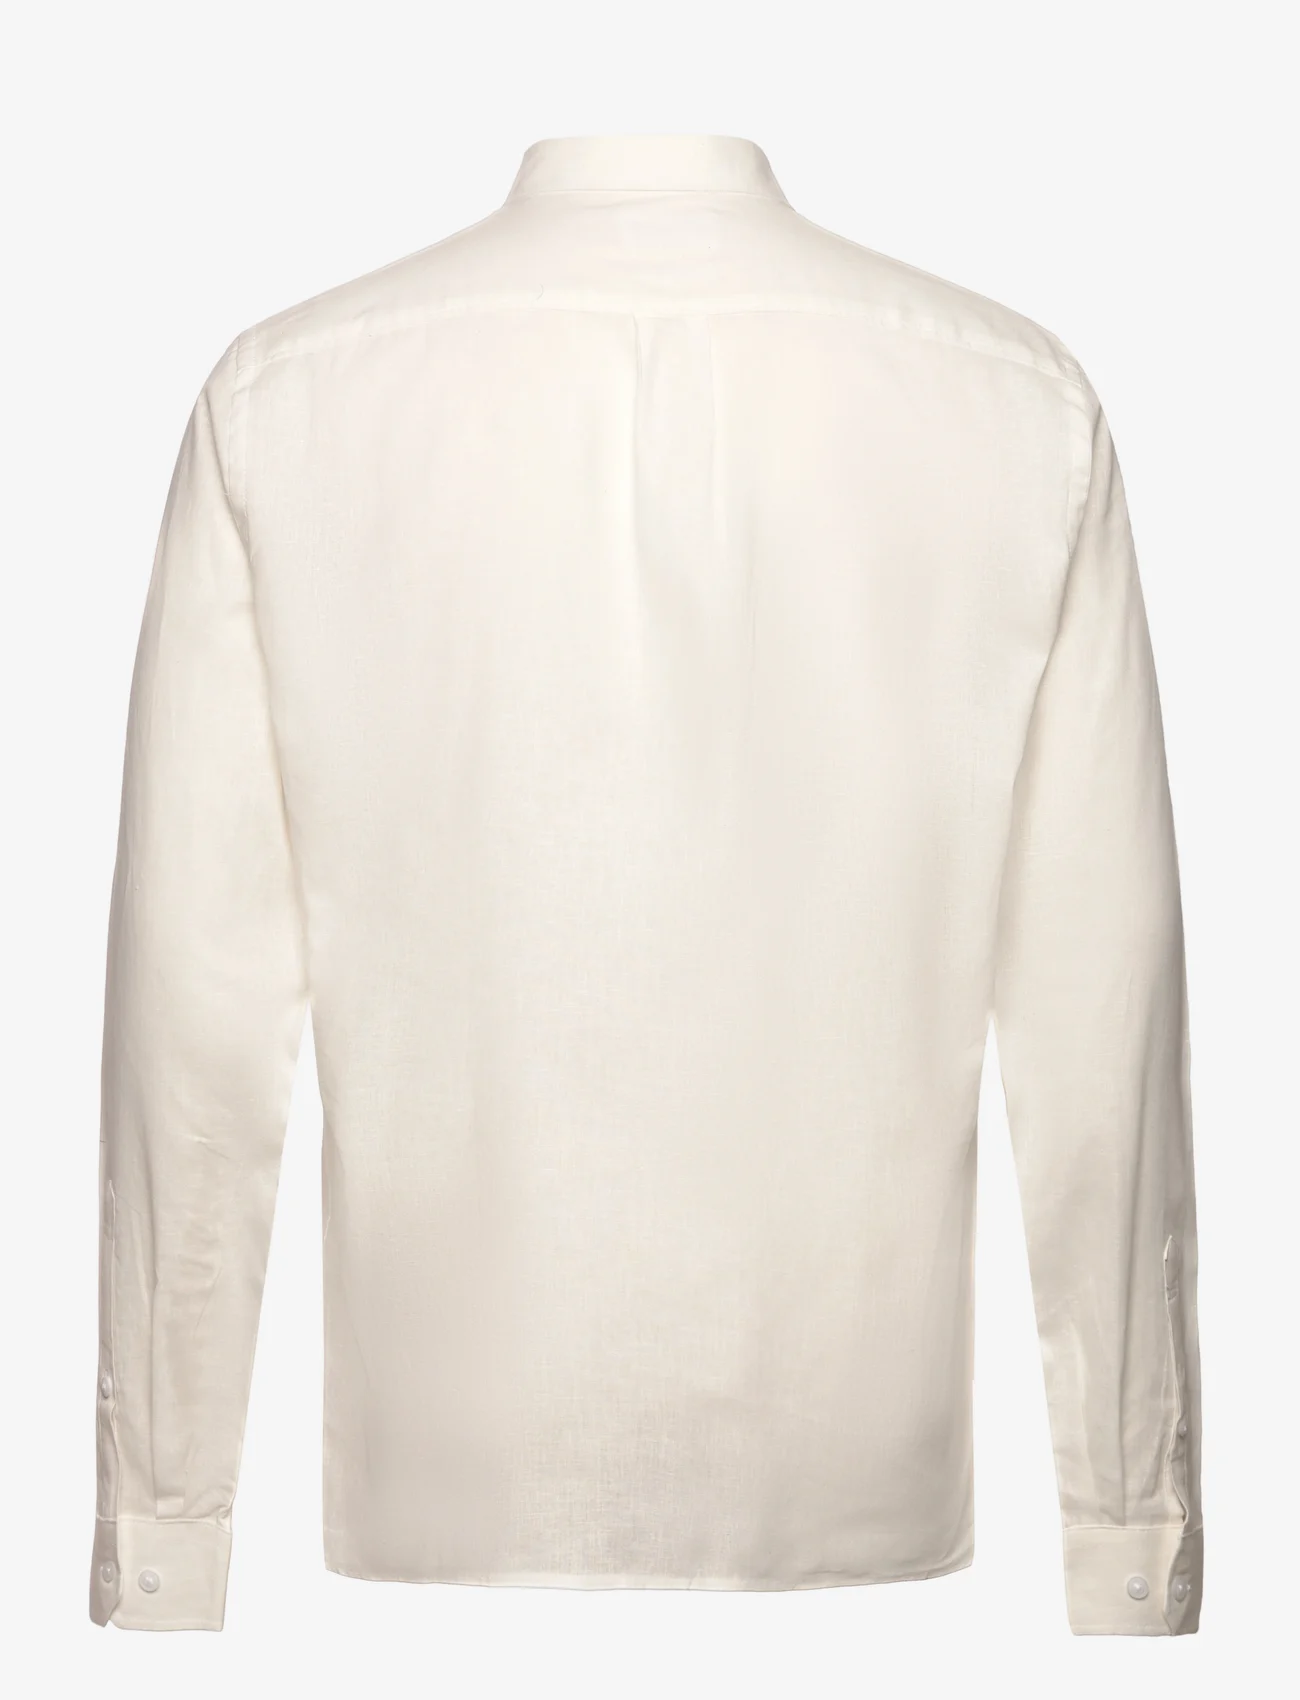 Lindbergh - Linen/cotton shirt L/S - lininiai marškiniai - white - 1